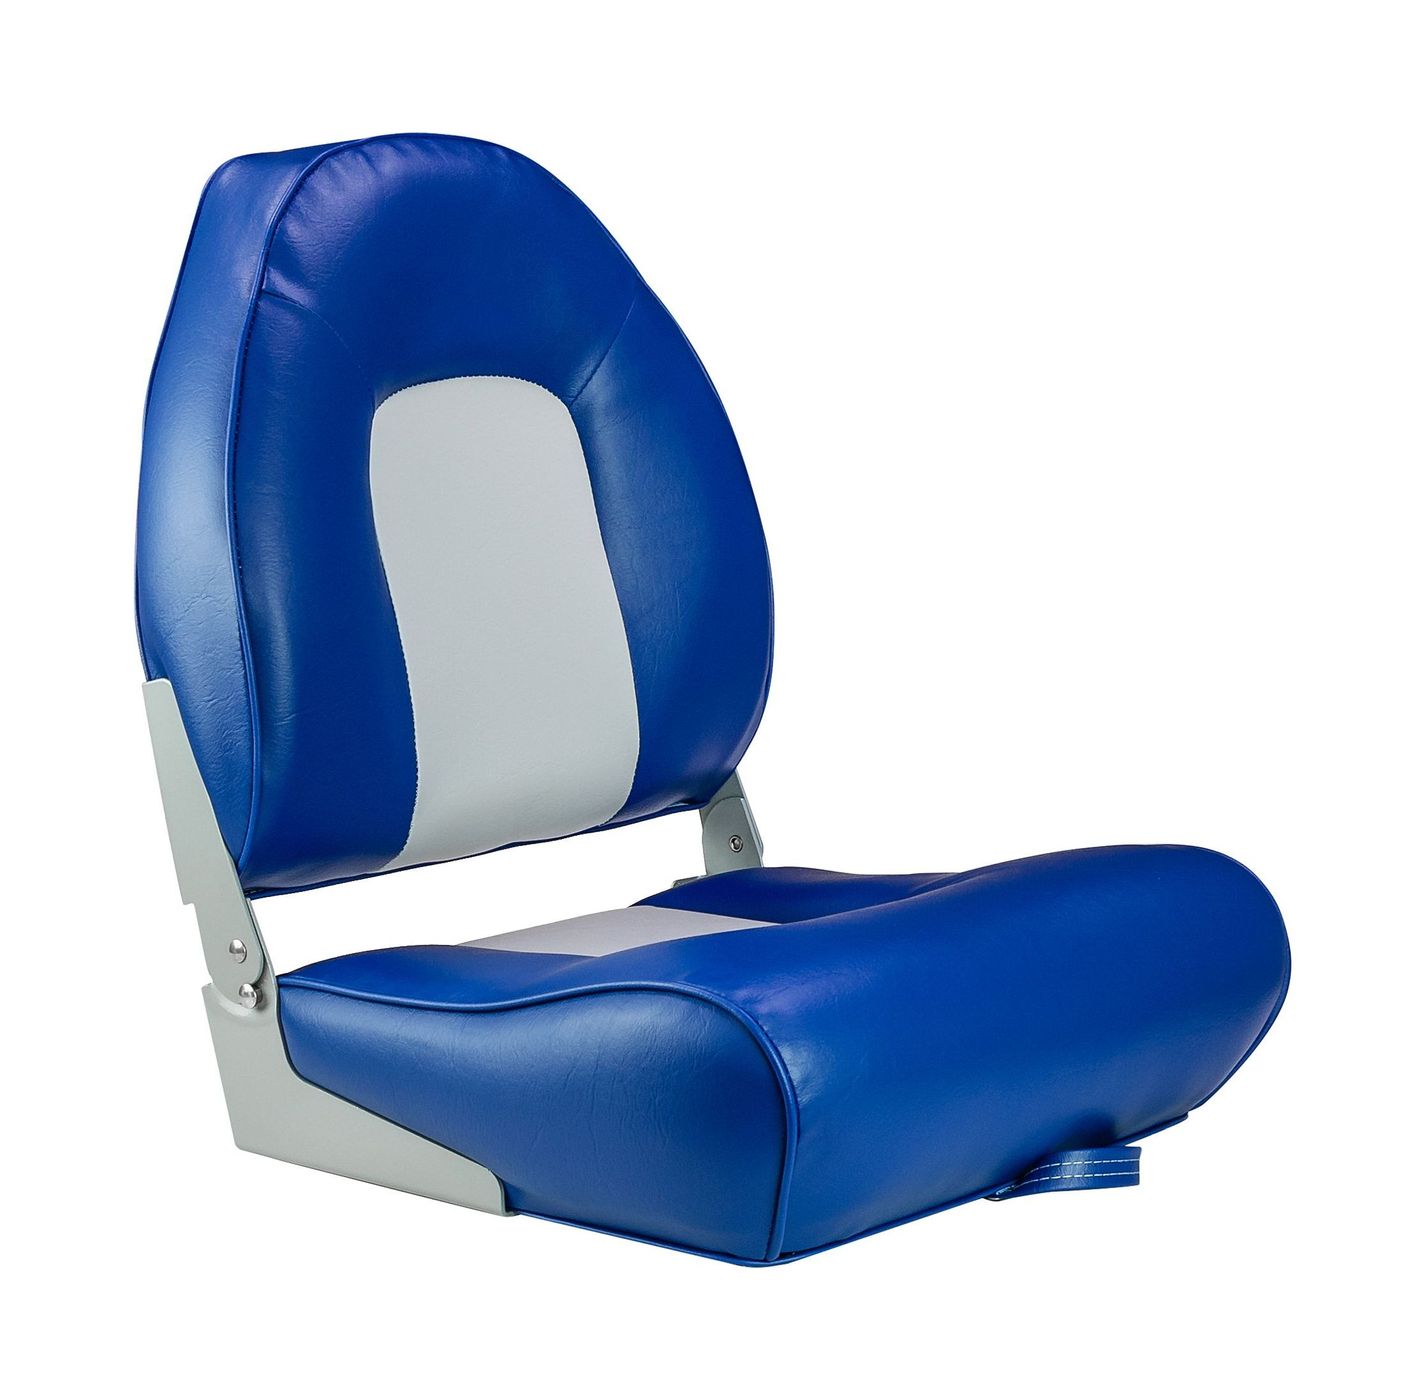 Кресло мягкое складное, обивка винил, цвет синий/серый, Marine Rocket 75116GB-MR сиденье мягкое pro casting обивка синий винил 75104b